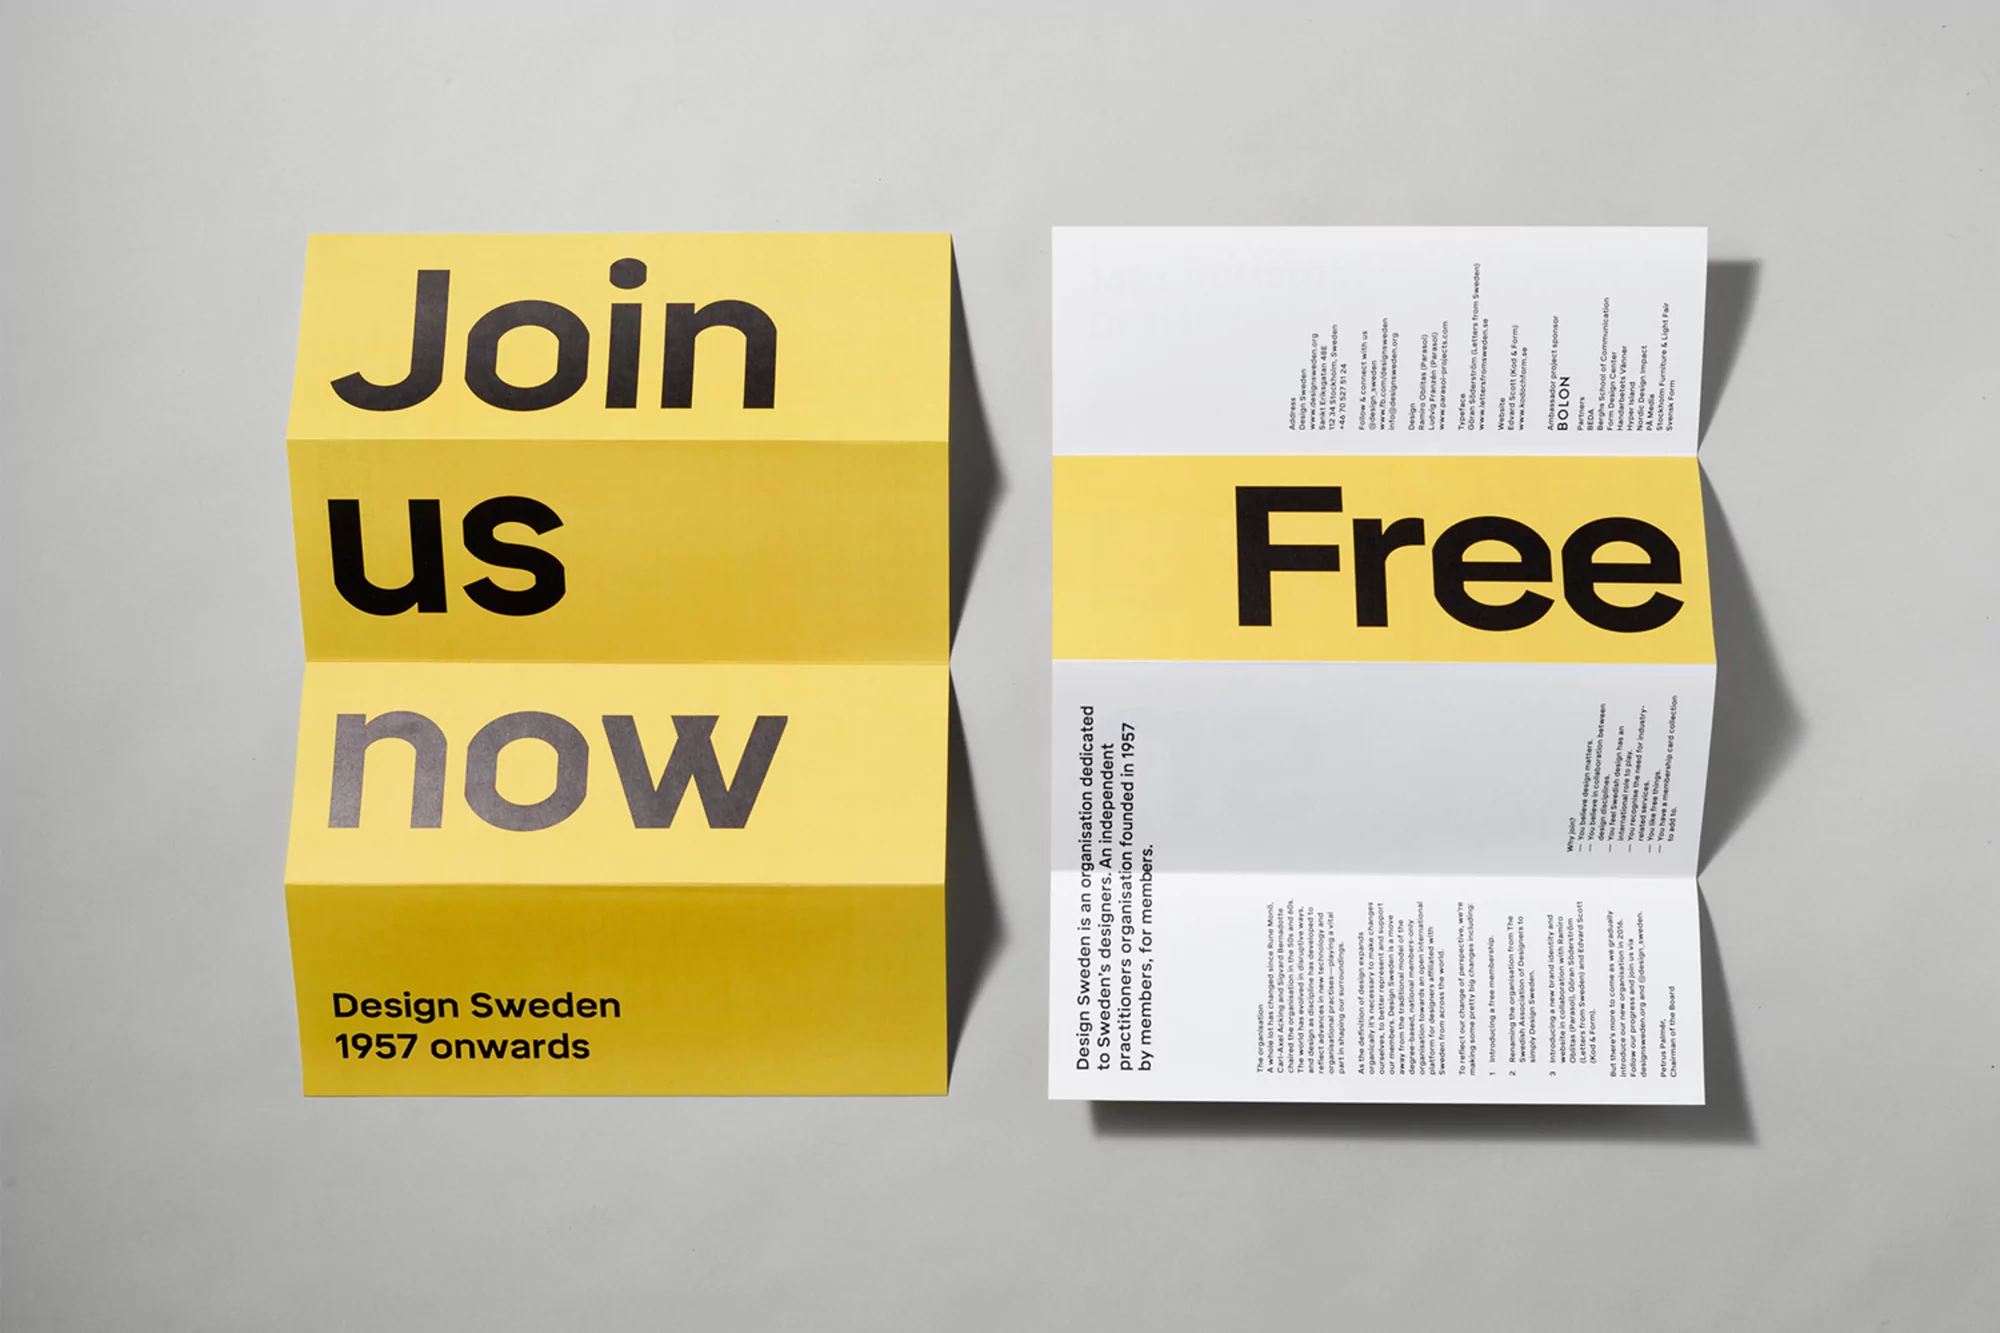 Design Sweden by Parasol